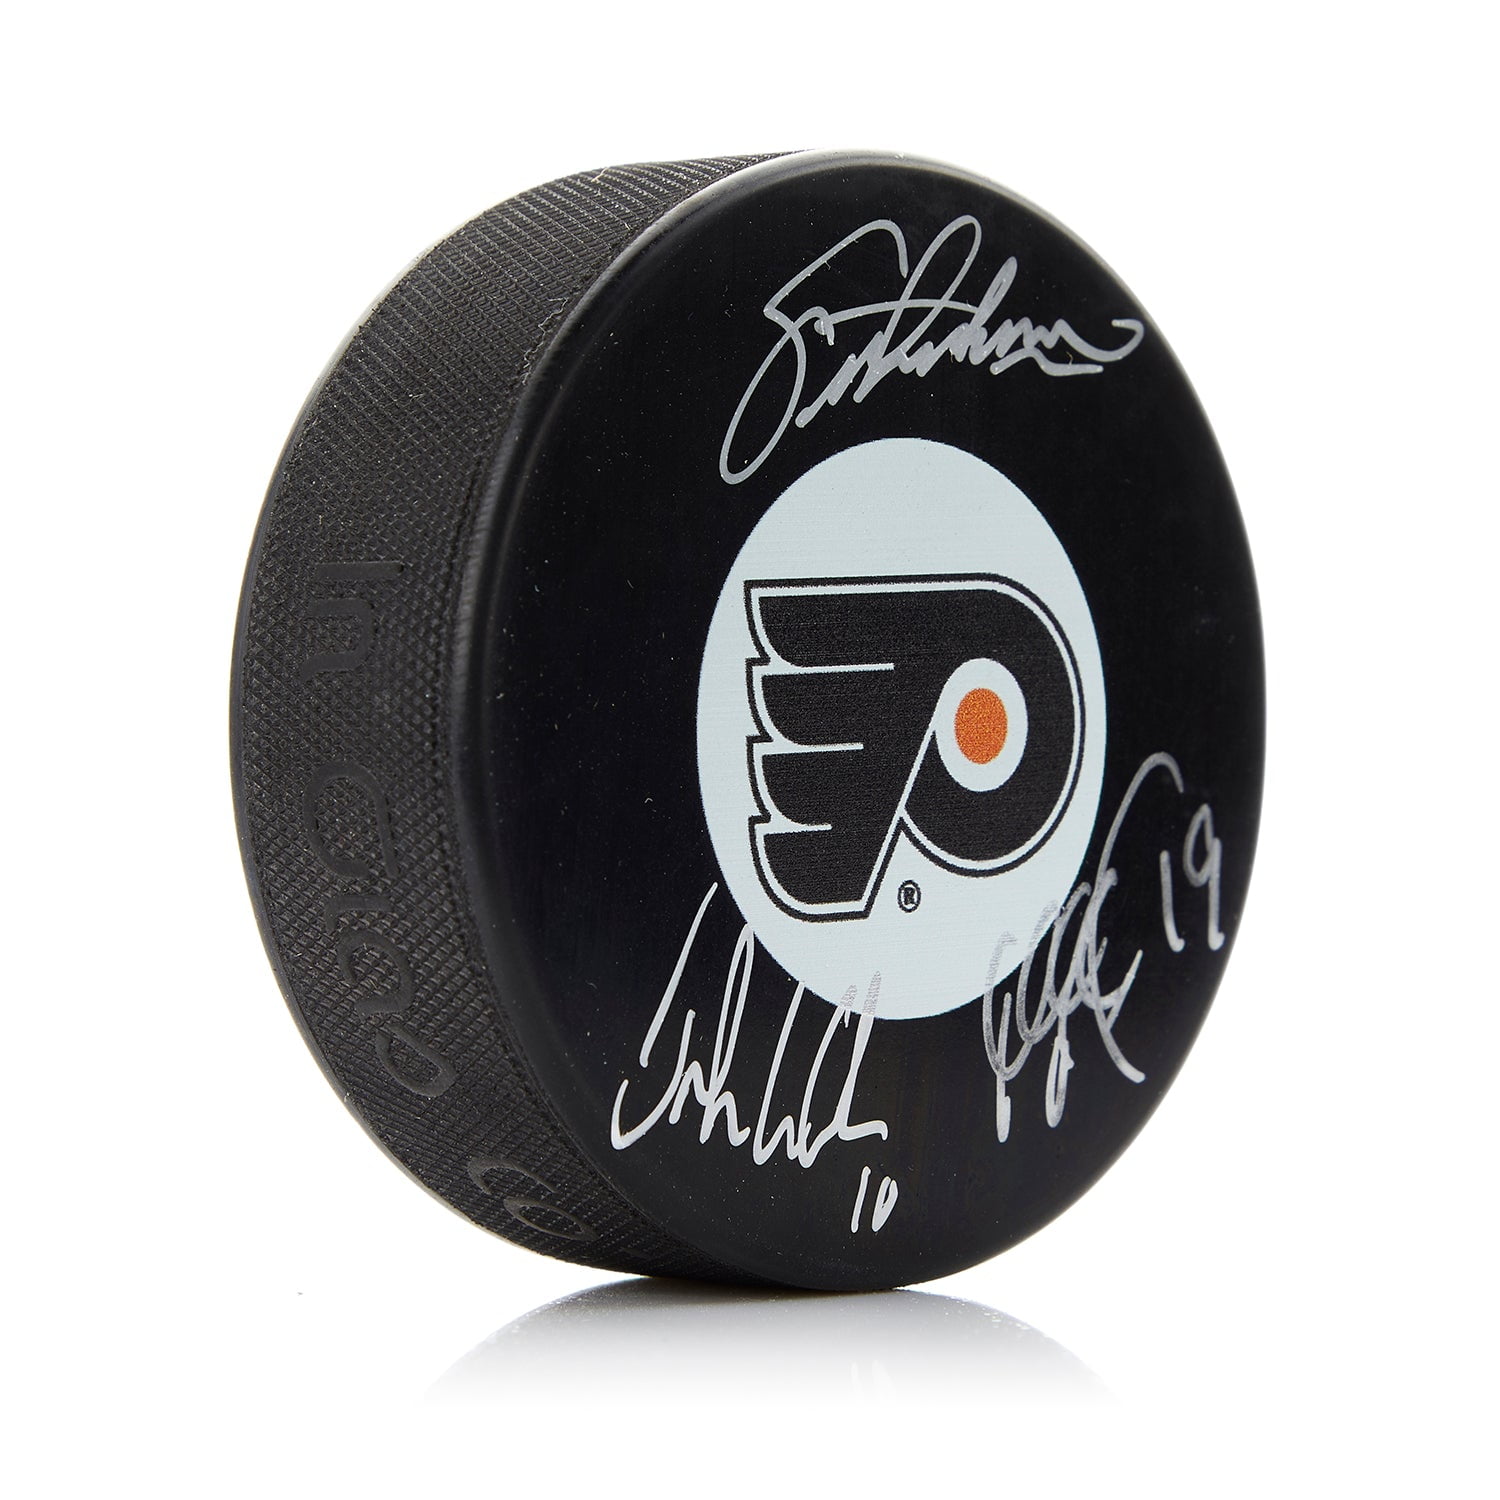 Jakub Voracek Philadelphia Flyers Hockey NHL Original Autographed